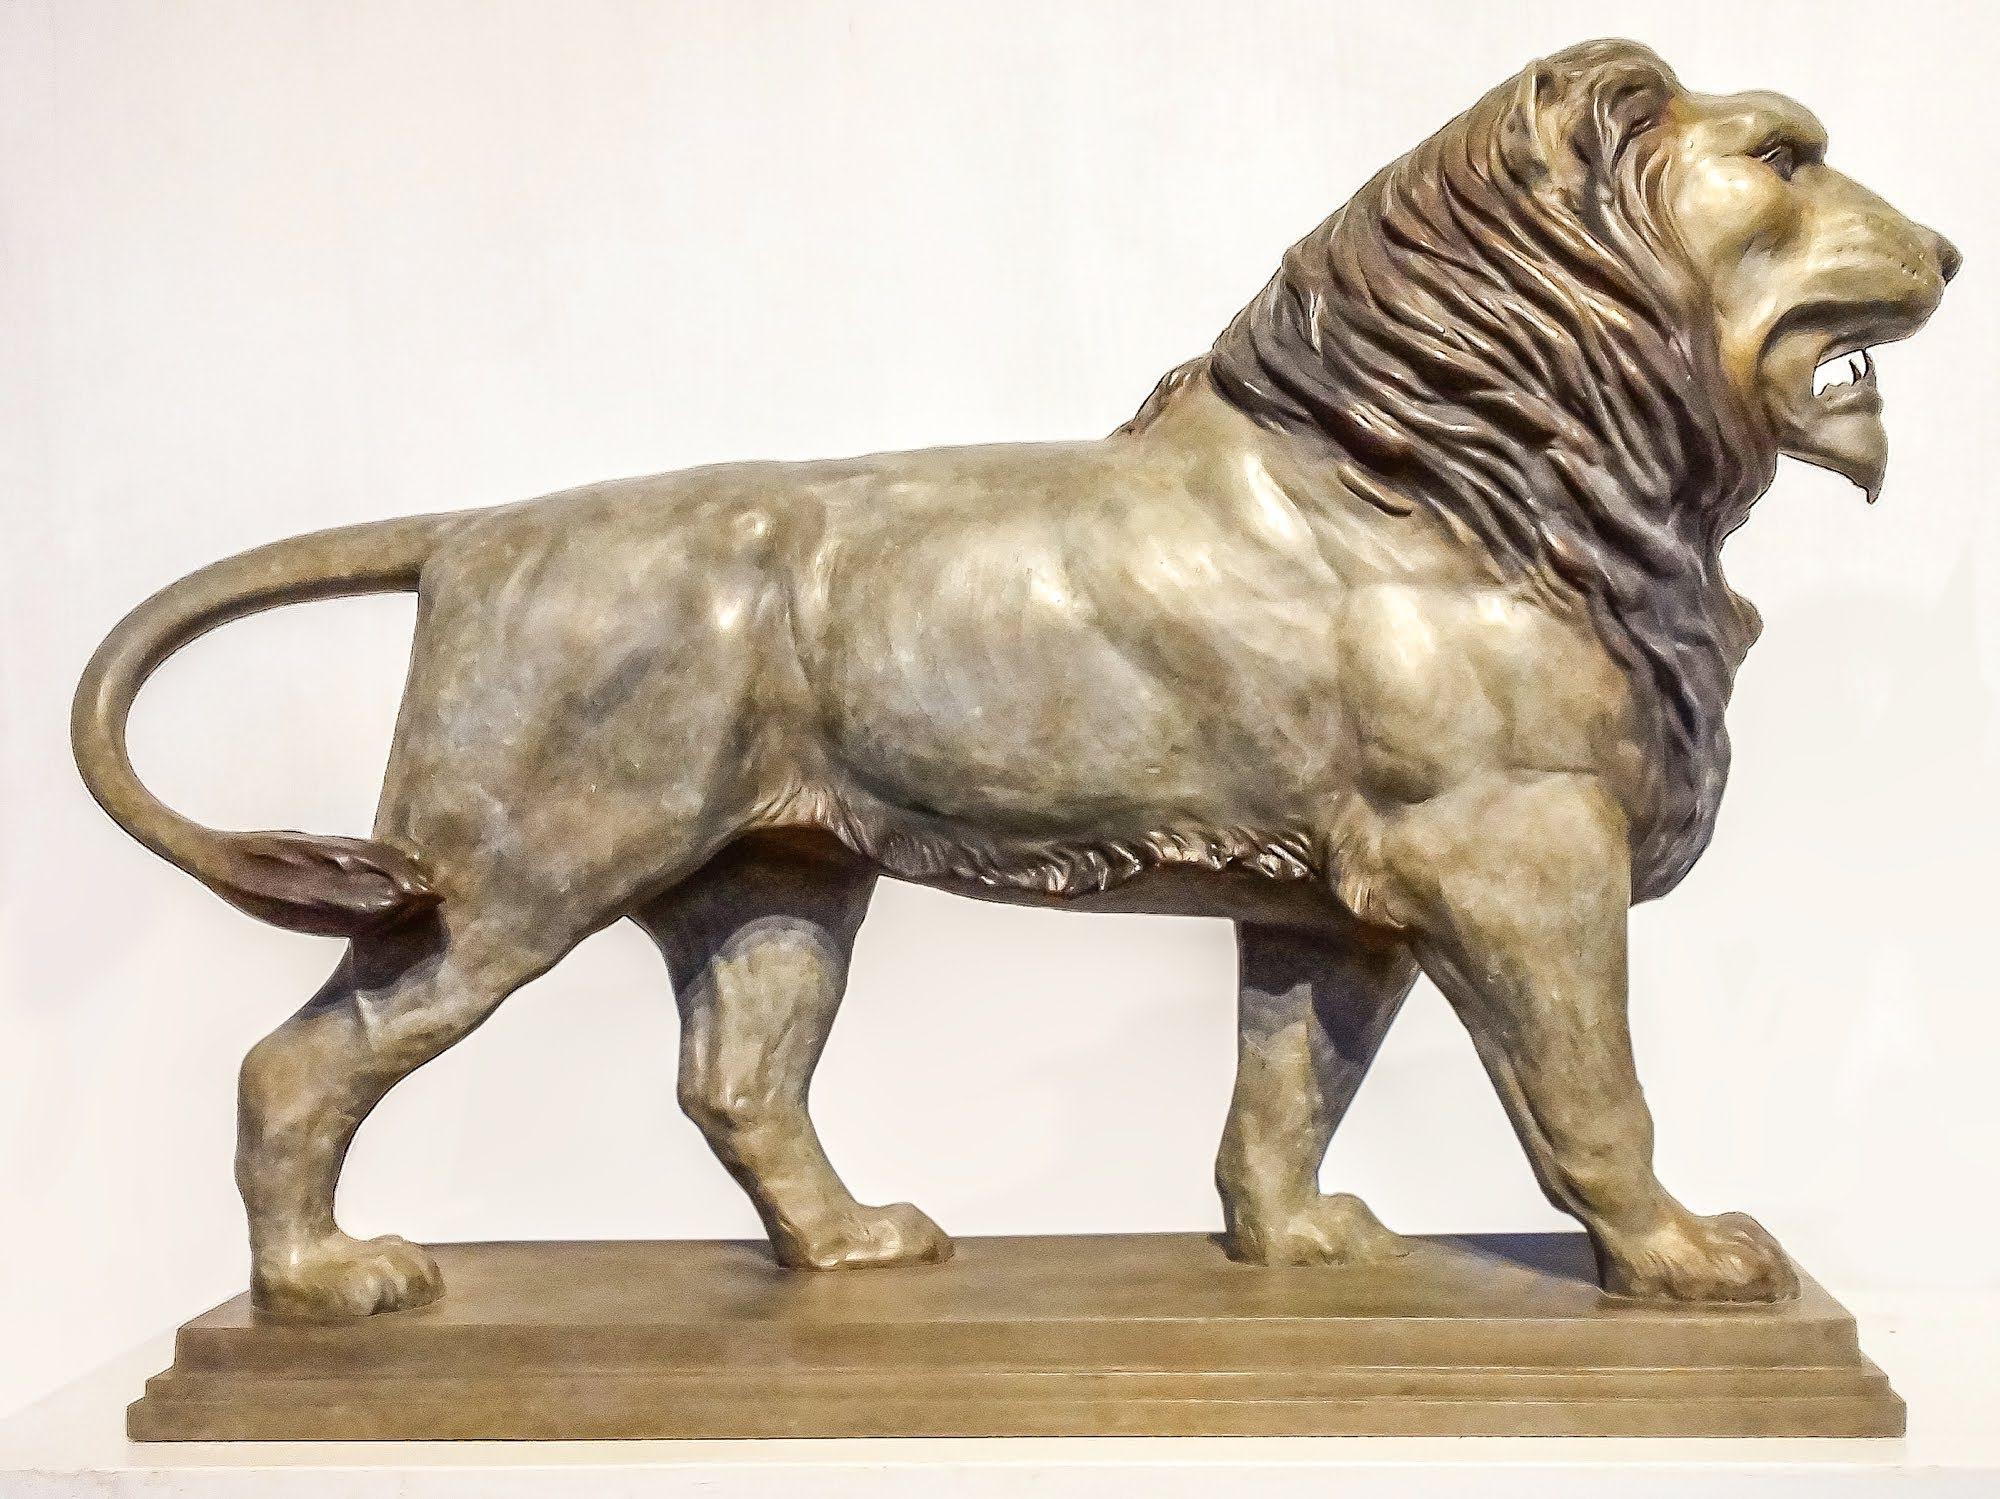 Barry Davies Figurative Sculpture – Anatomische Studie eines Löwen